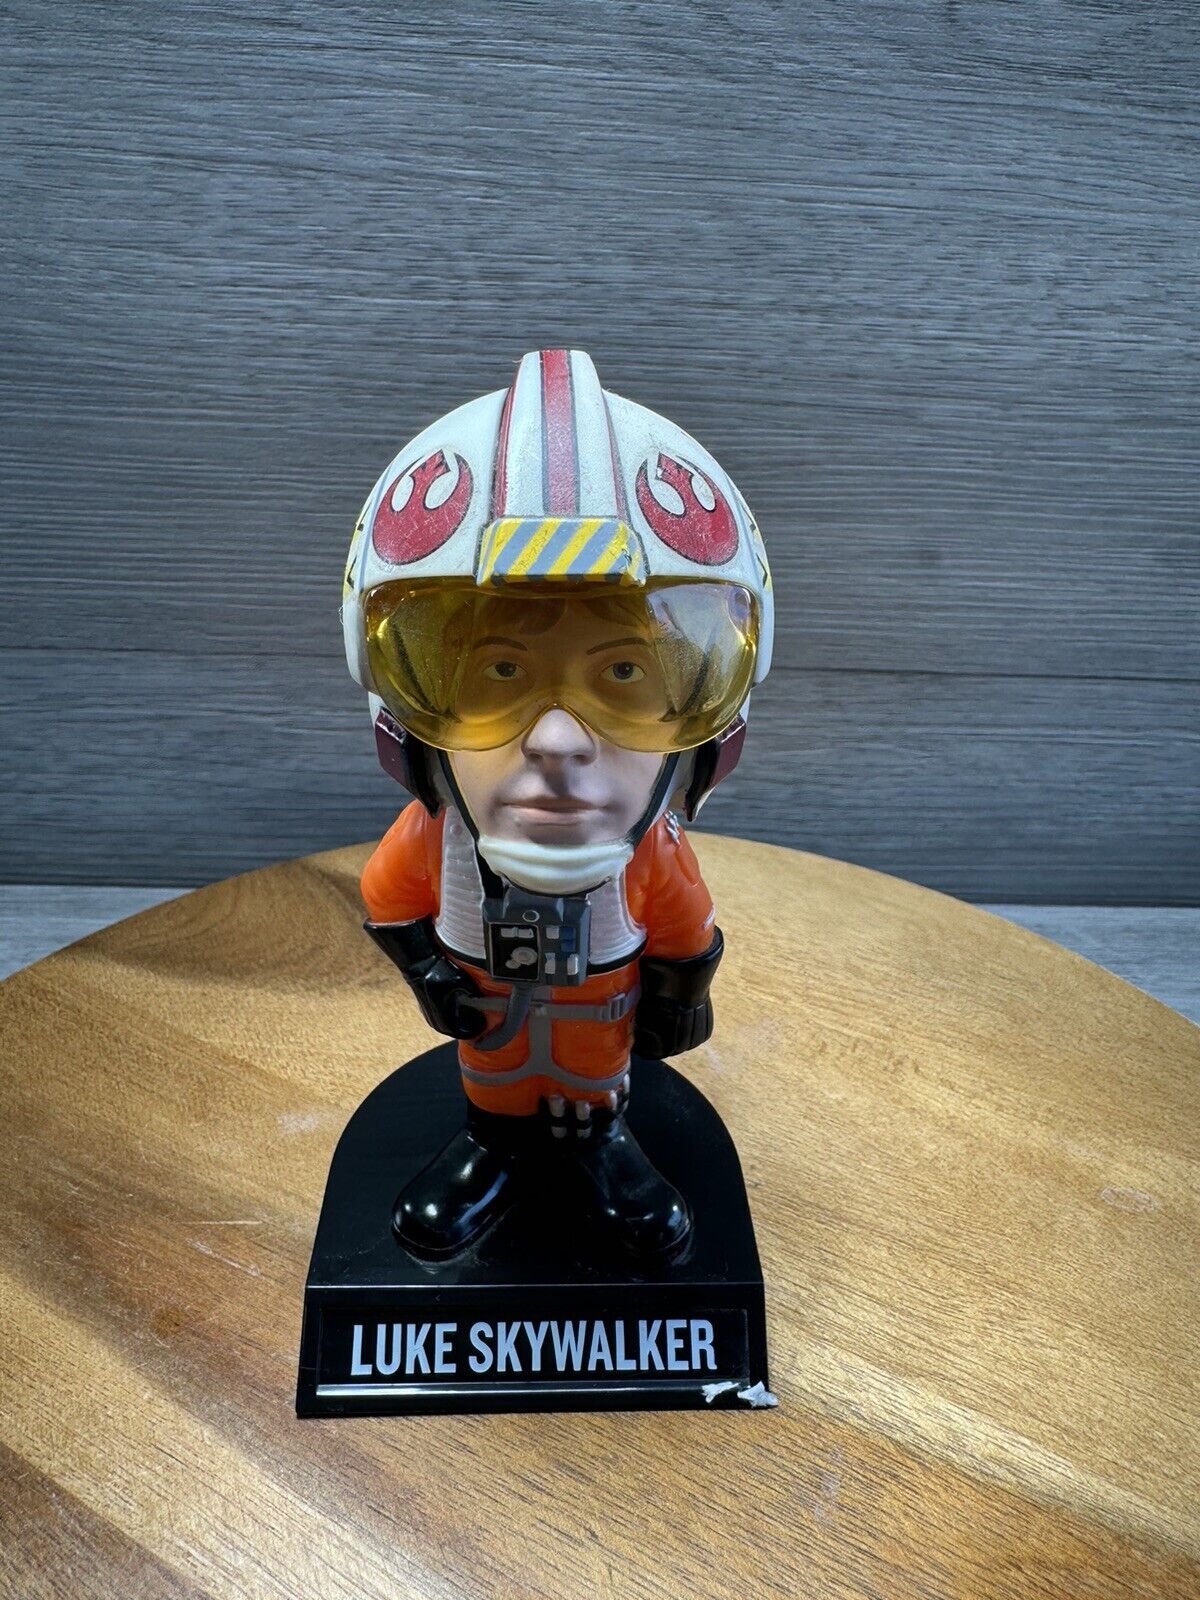 2008 Funko Star Wars Luke Skywalker Bobblehead